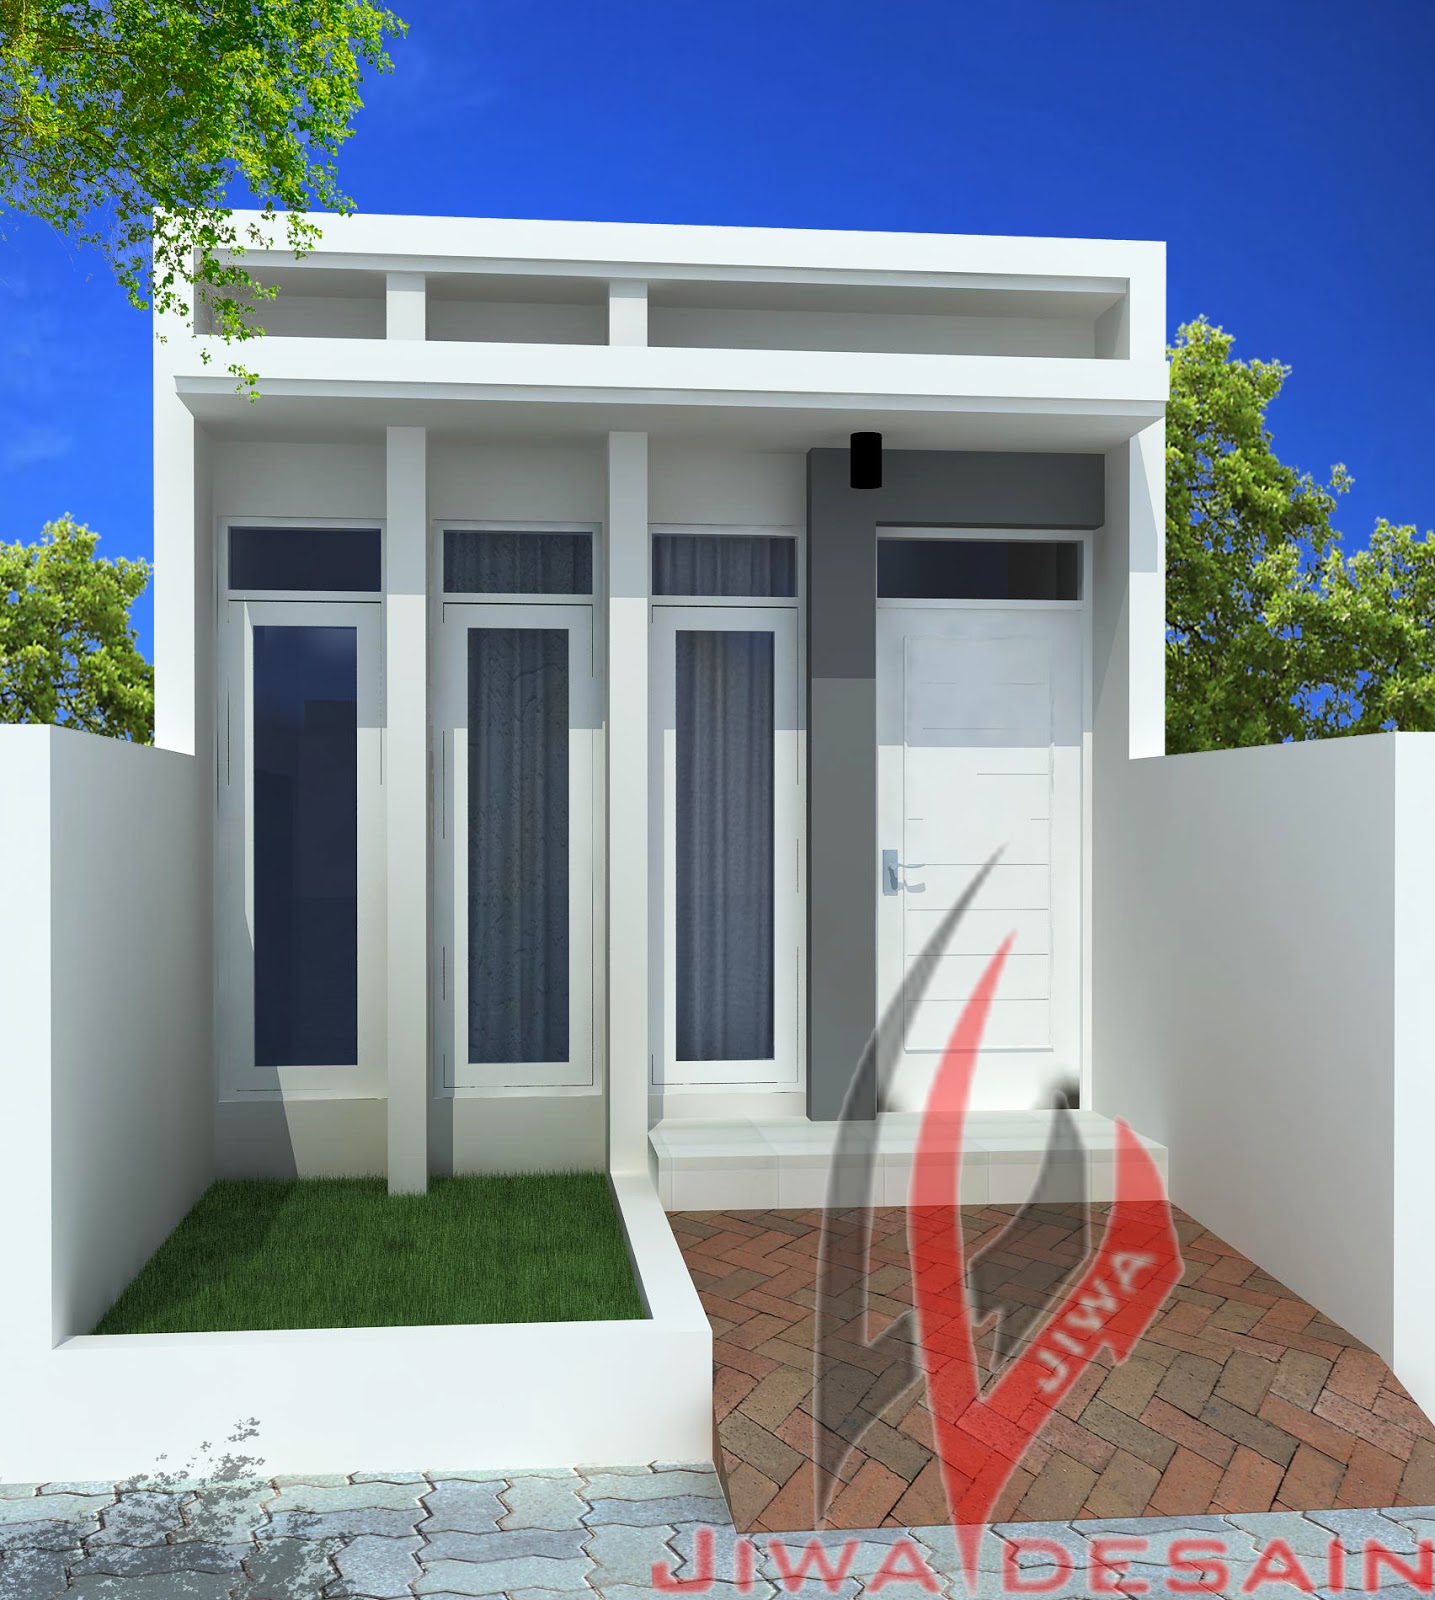 Desain Rumahmu Merencanakan Rumah Lebar 4 Meter Part 2 Gambar